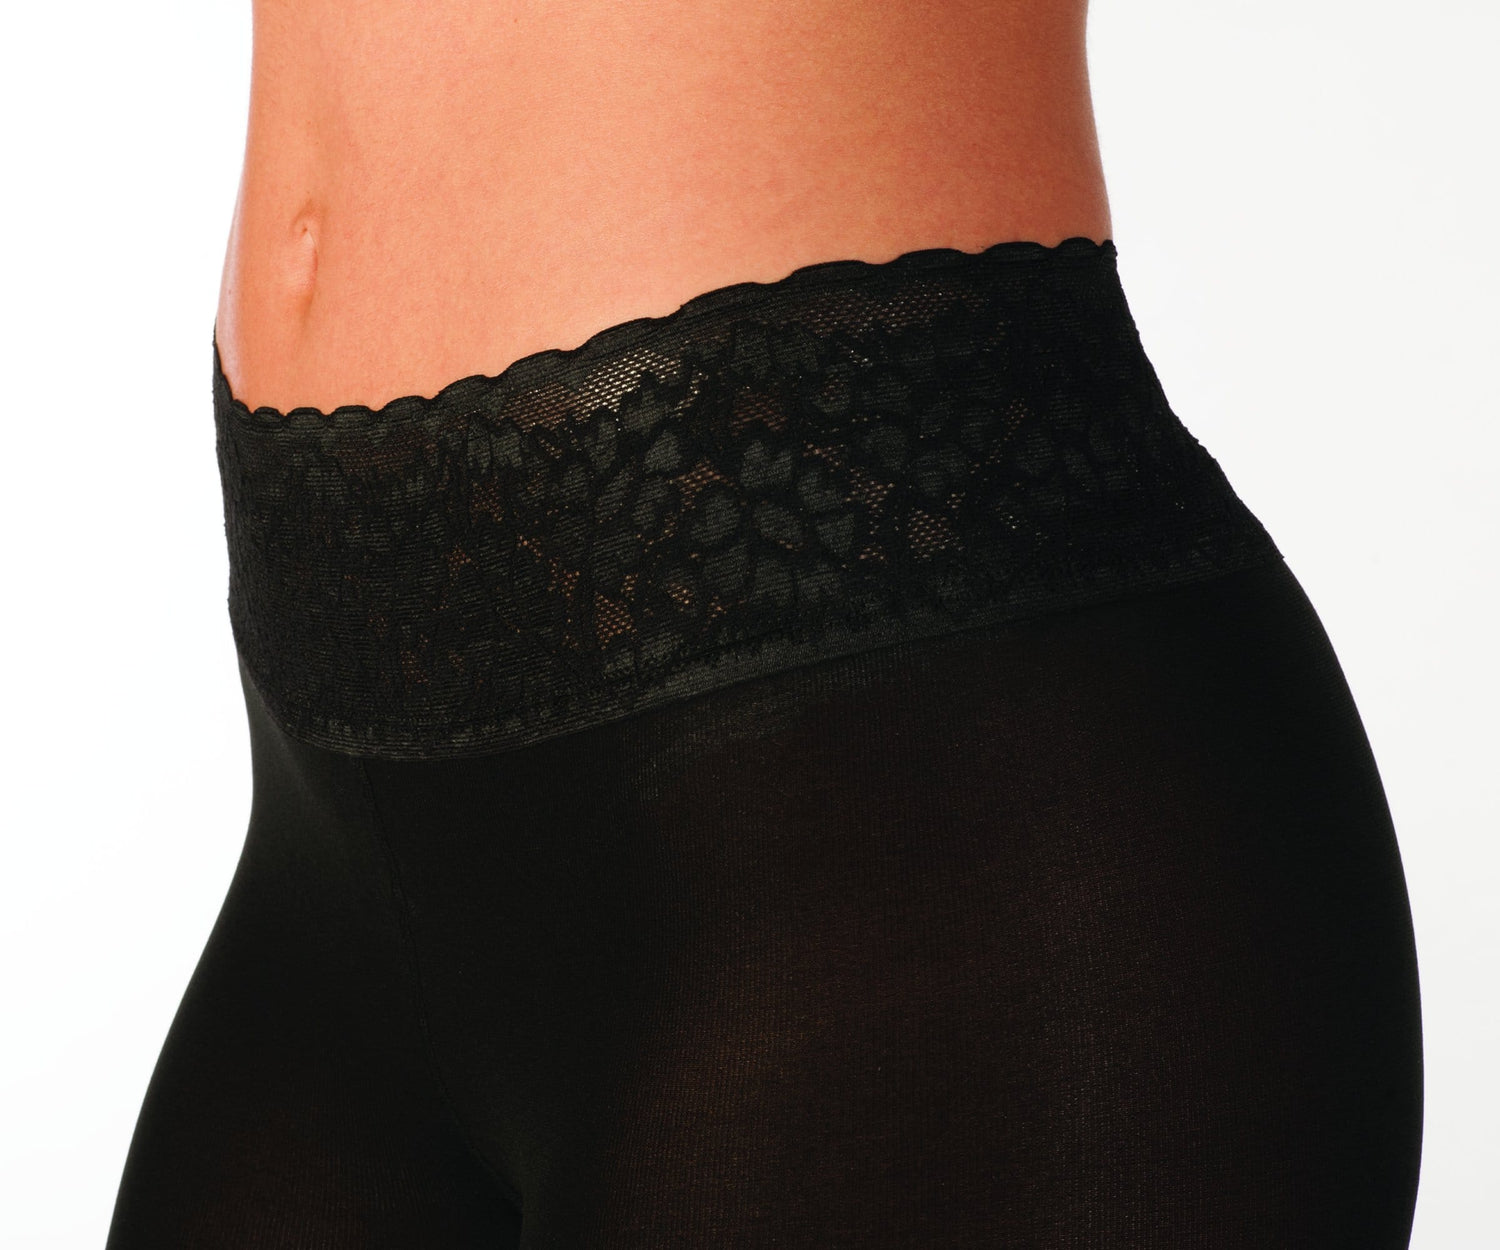 Sheer Black Pantyhose, Comfortable Luxe Waistband